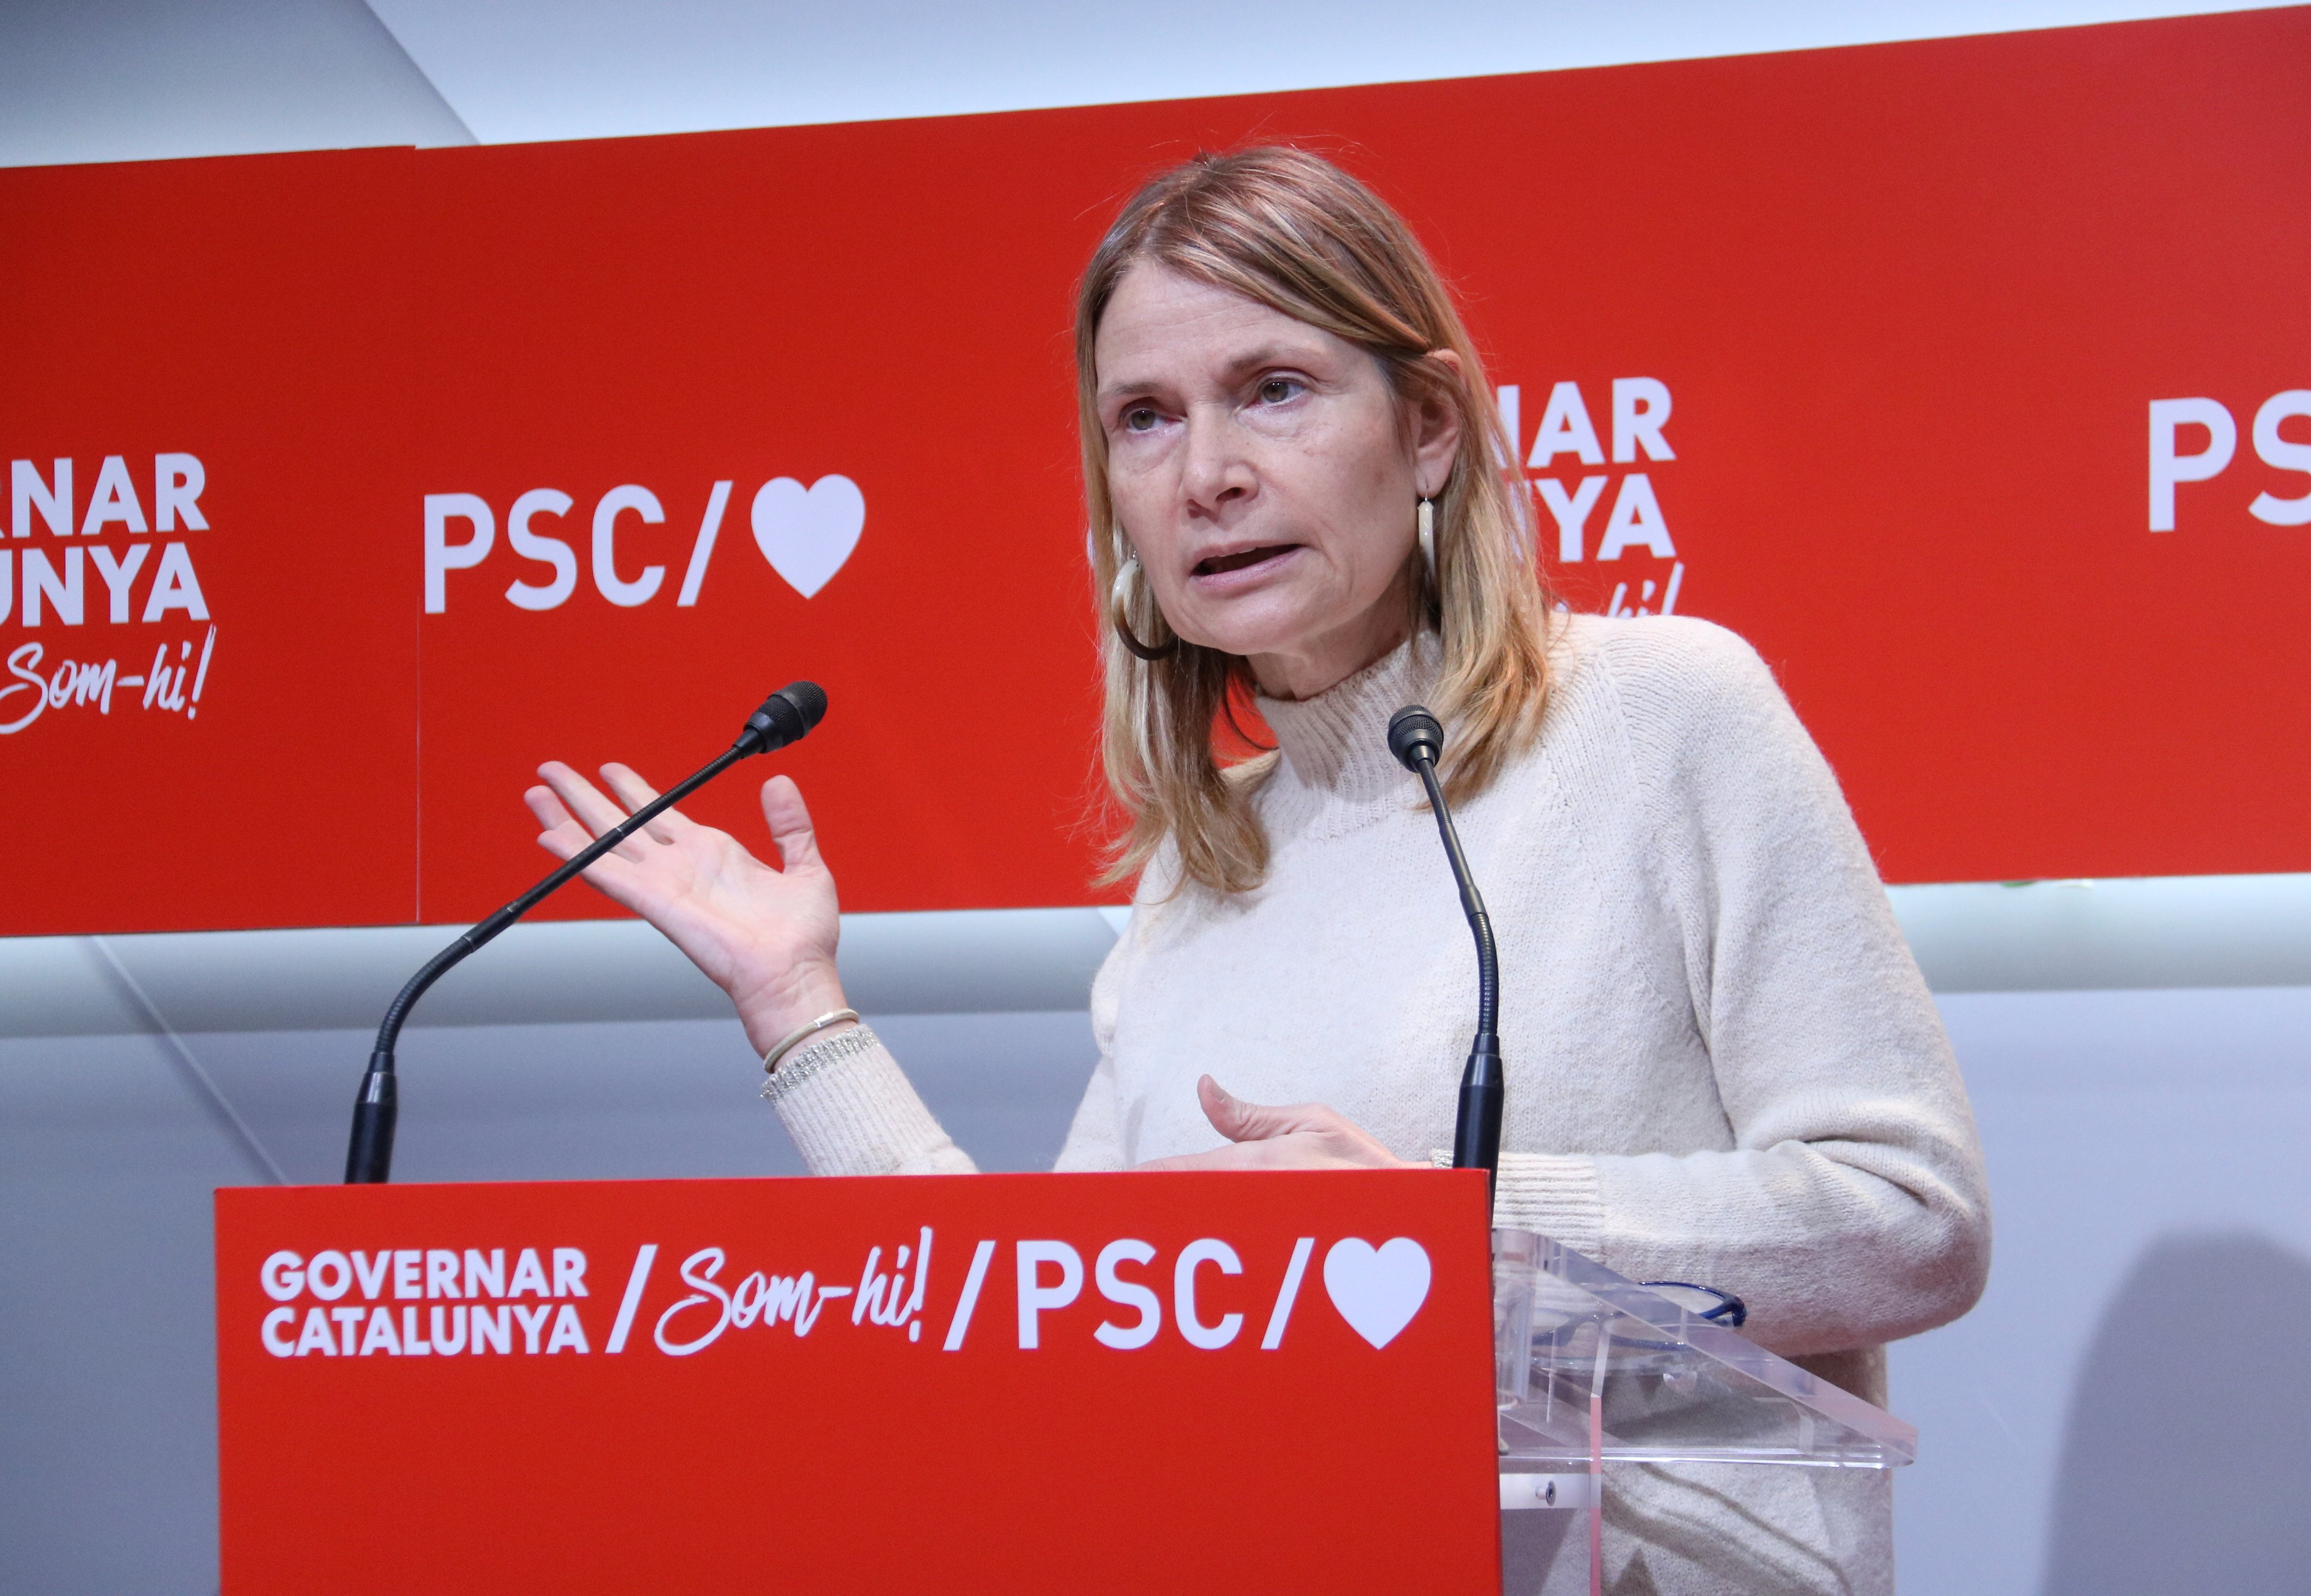 El PSC equipara l’espionatge a Sánchez i el CatalanGate: “Són igual de greus”